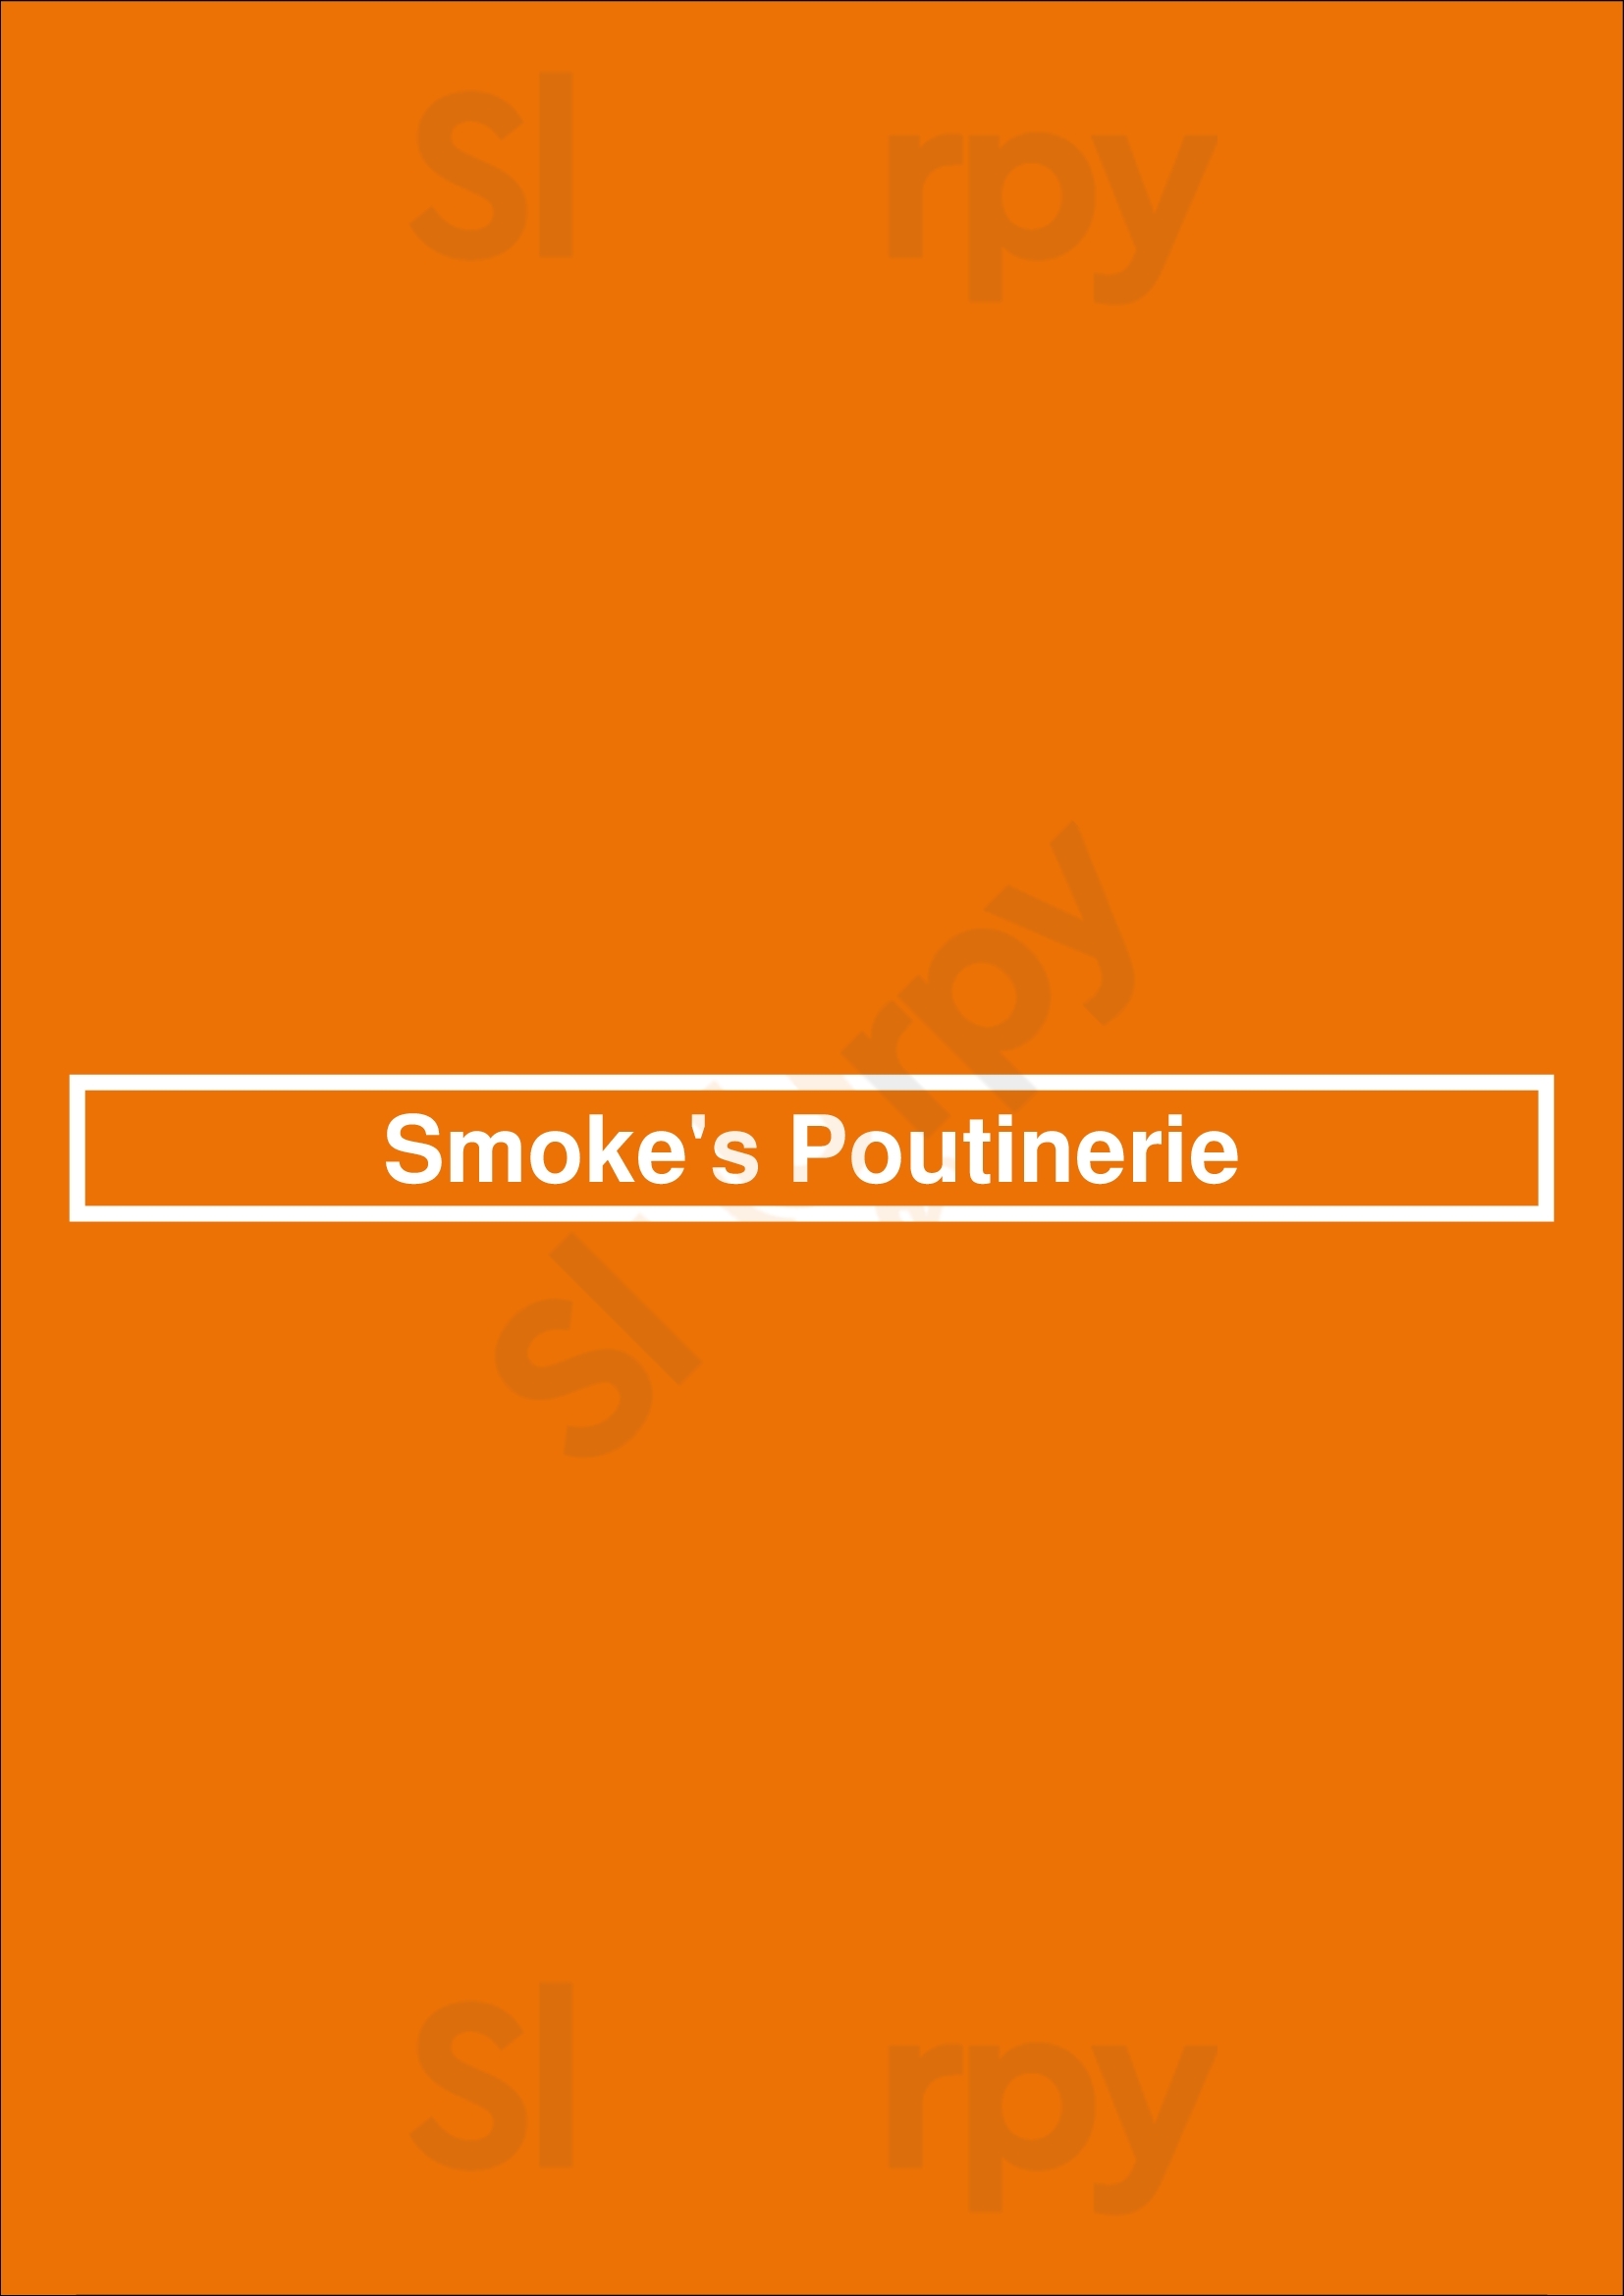 Smoke's Poutinerie Guelph Menu - 1